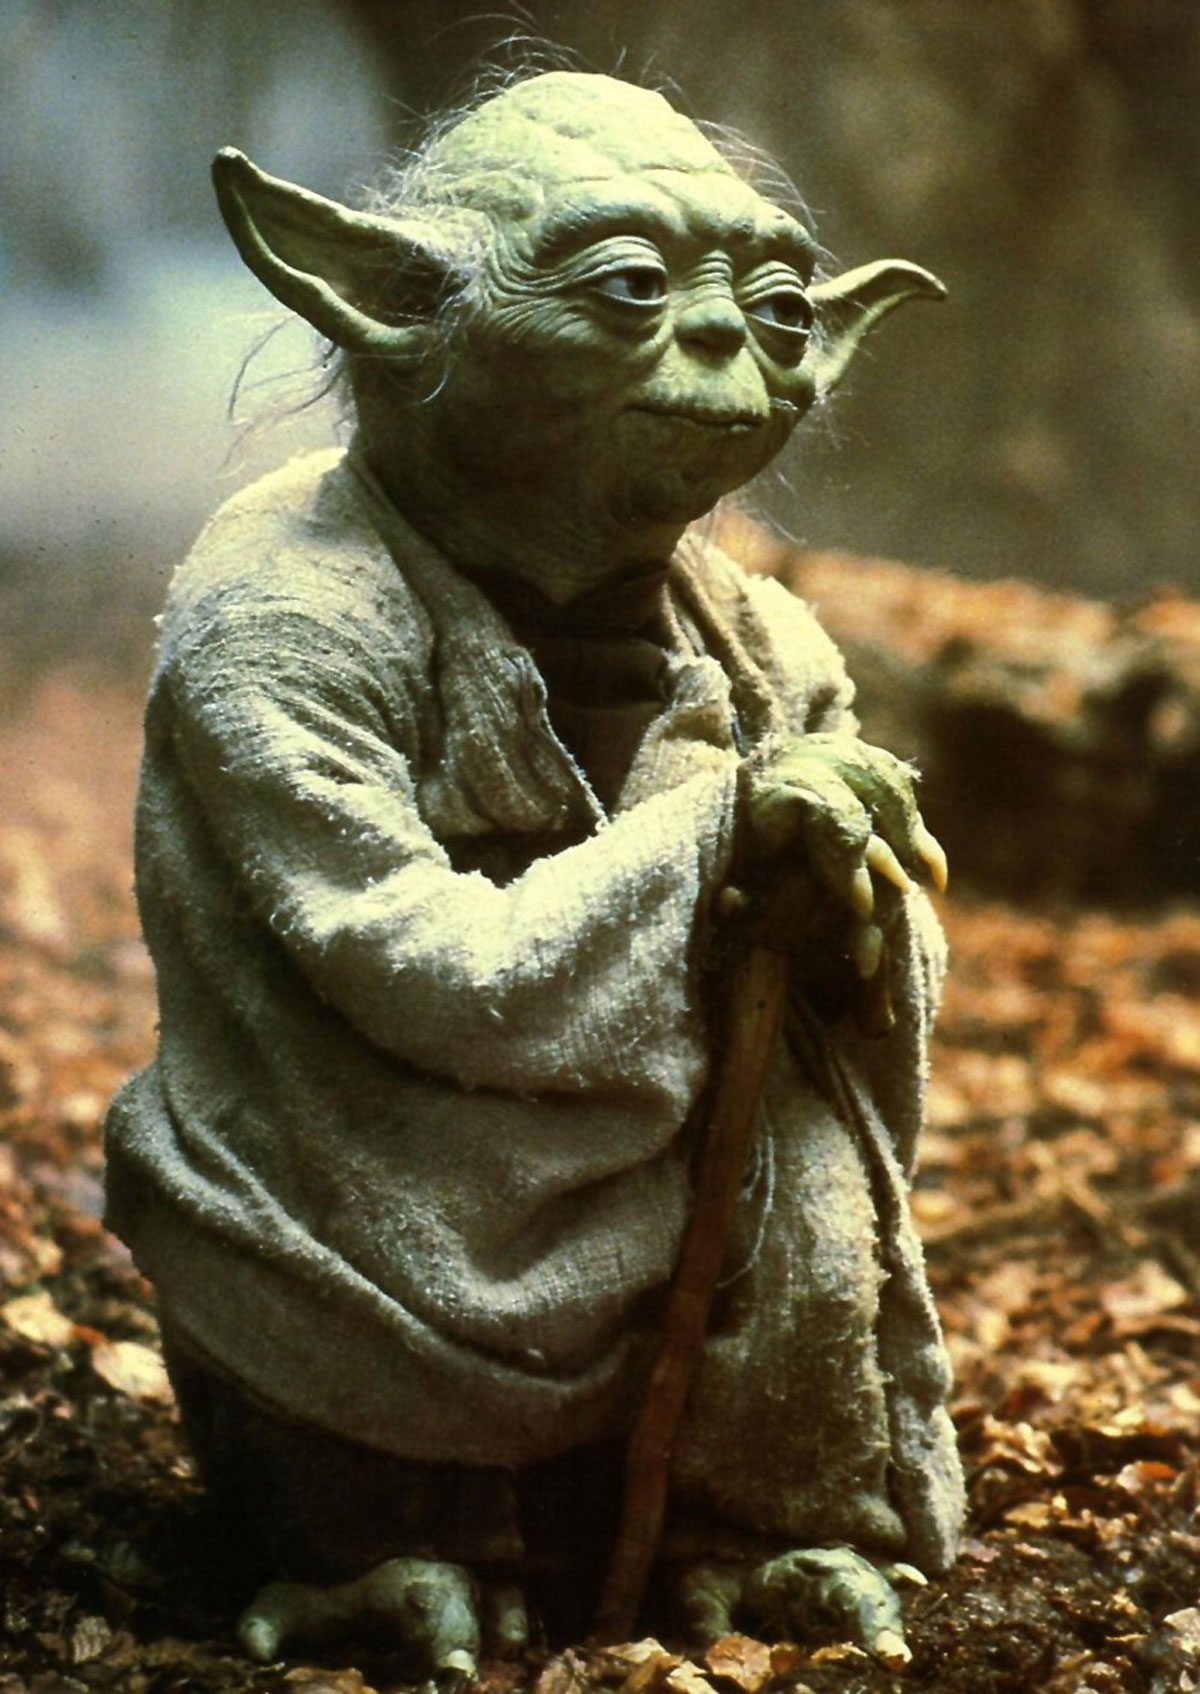 Yoda-featured1.jpg